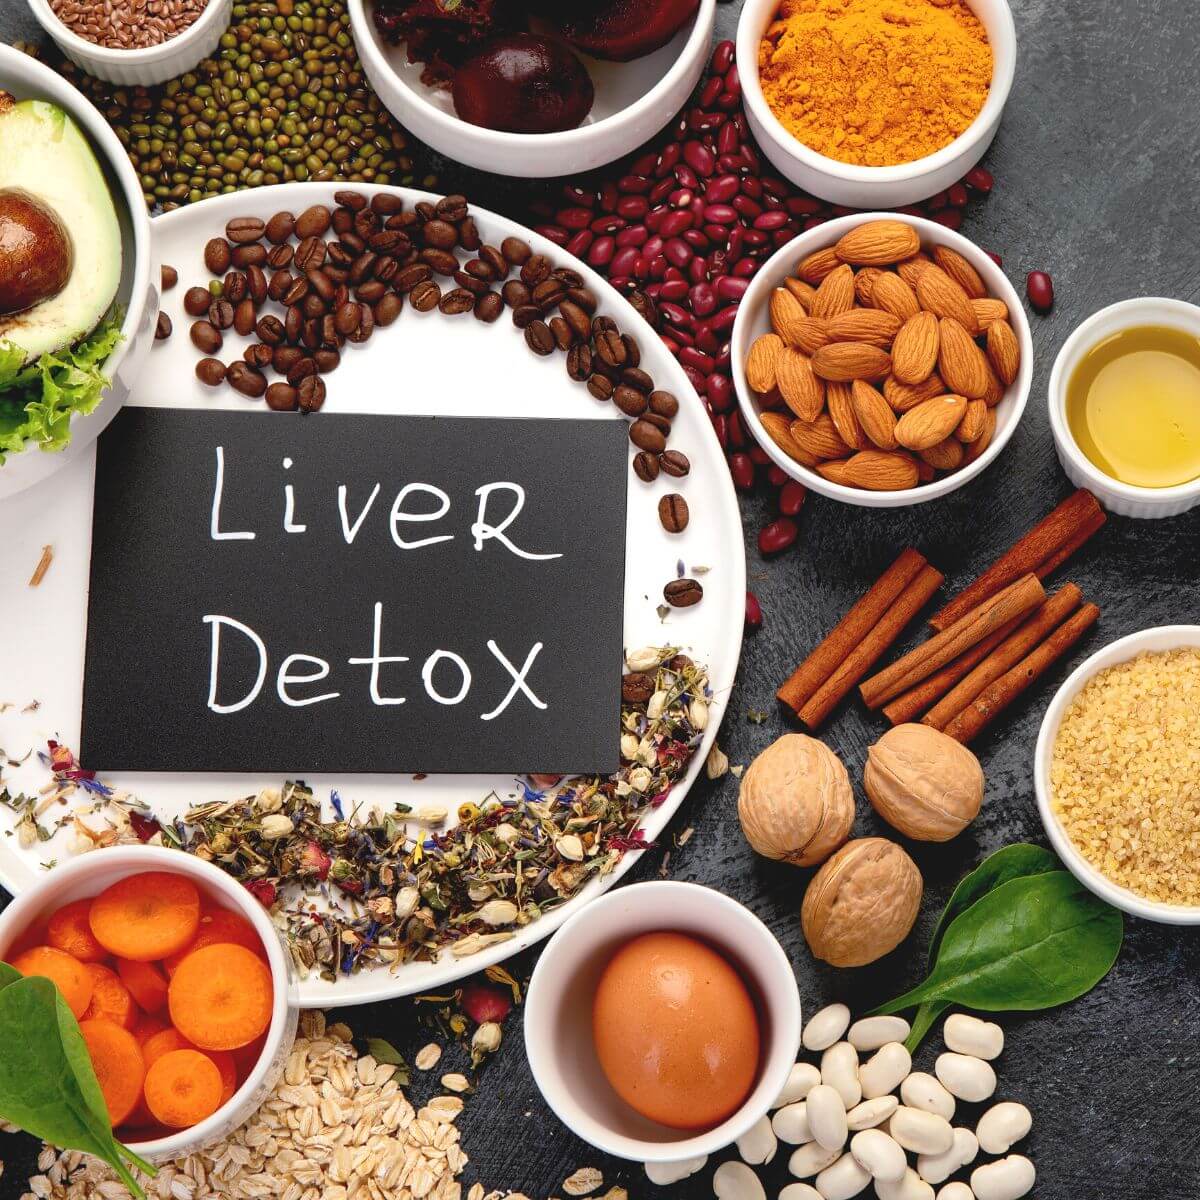 Liver detox holistic cleansing methods